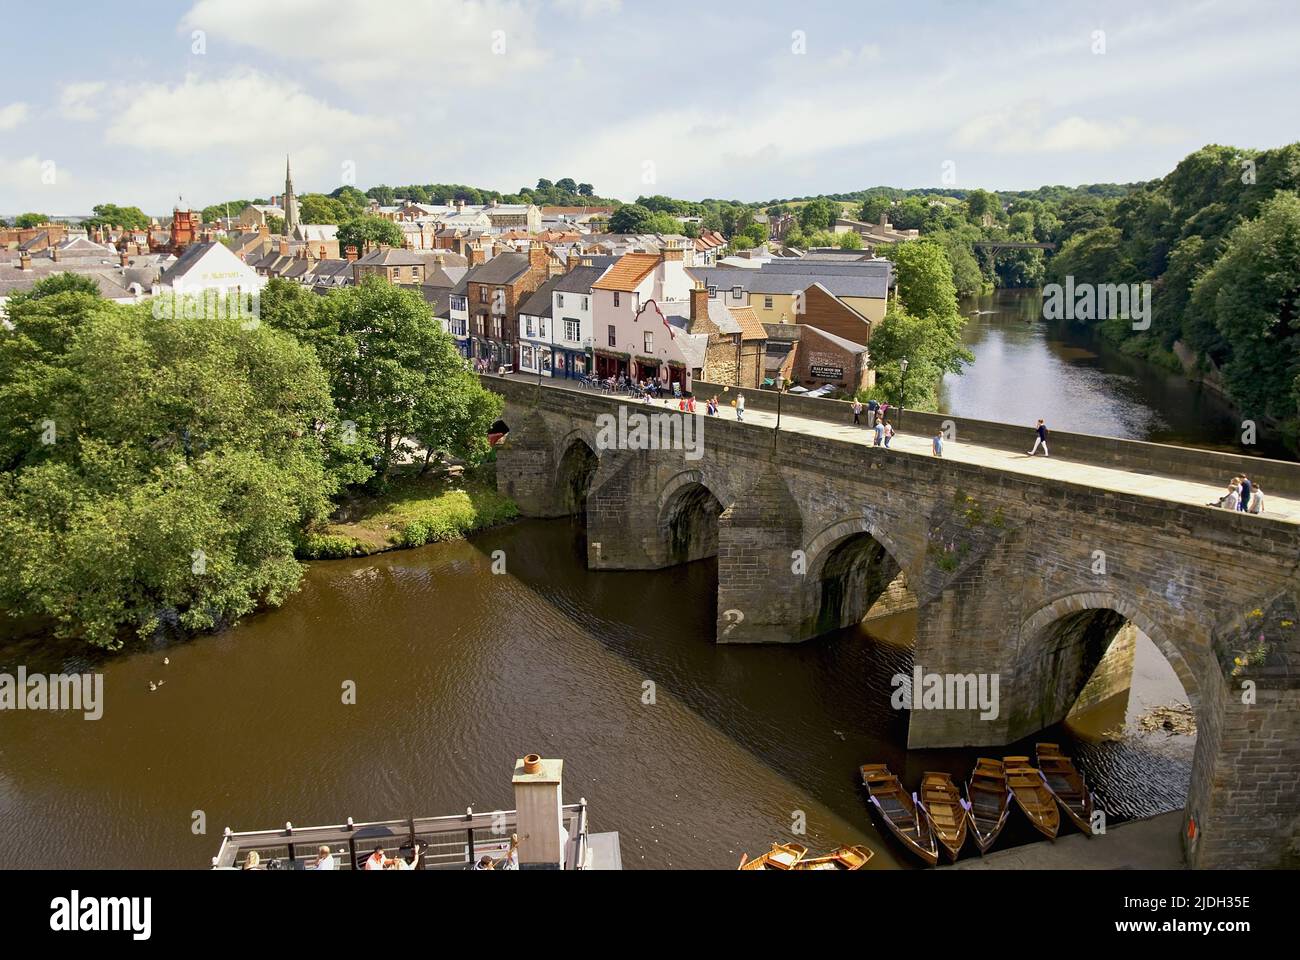 Vieille ville de Durham dans le nord de l'Angleterre, Royaume-Uni, Angleterre Banque D'Images